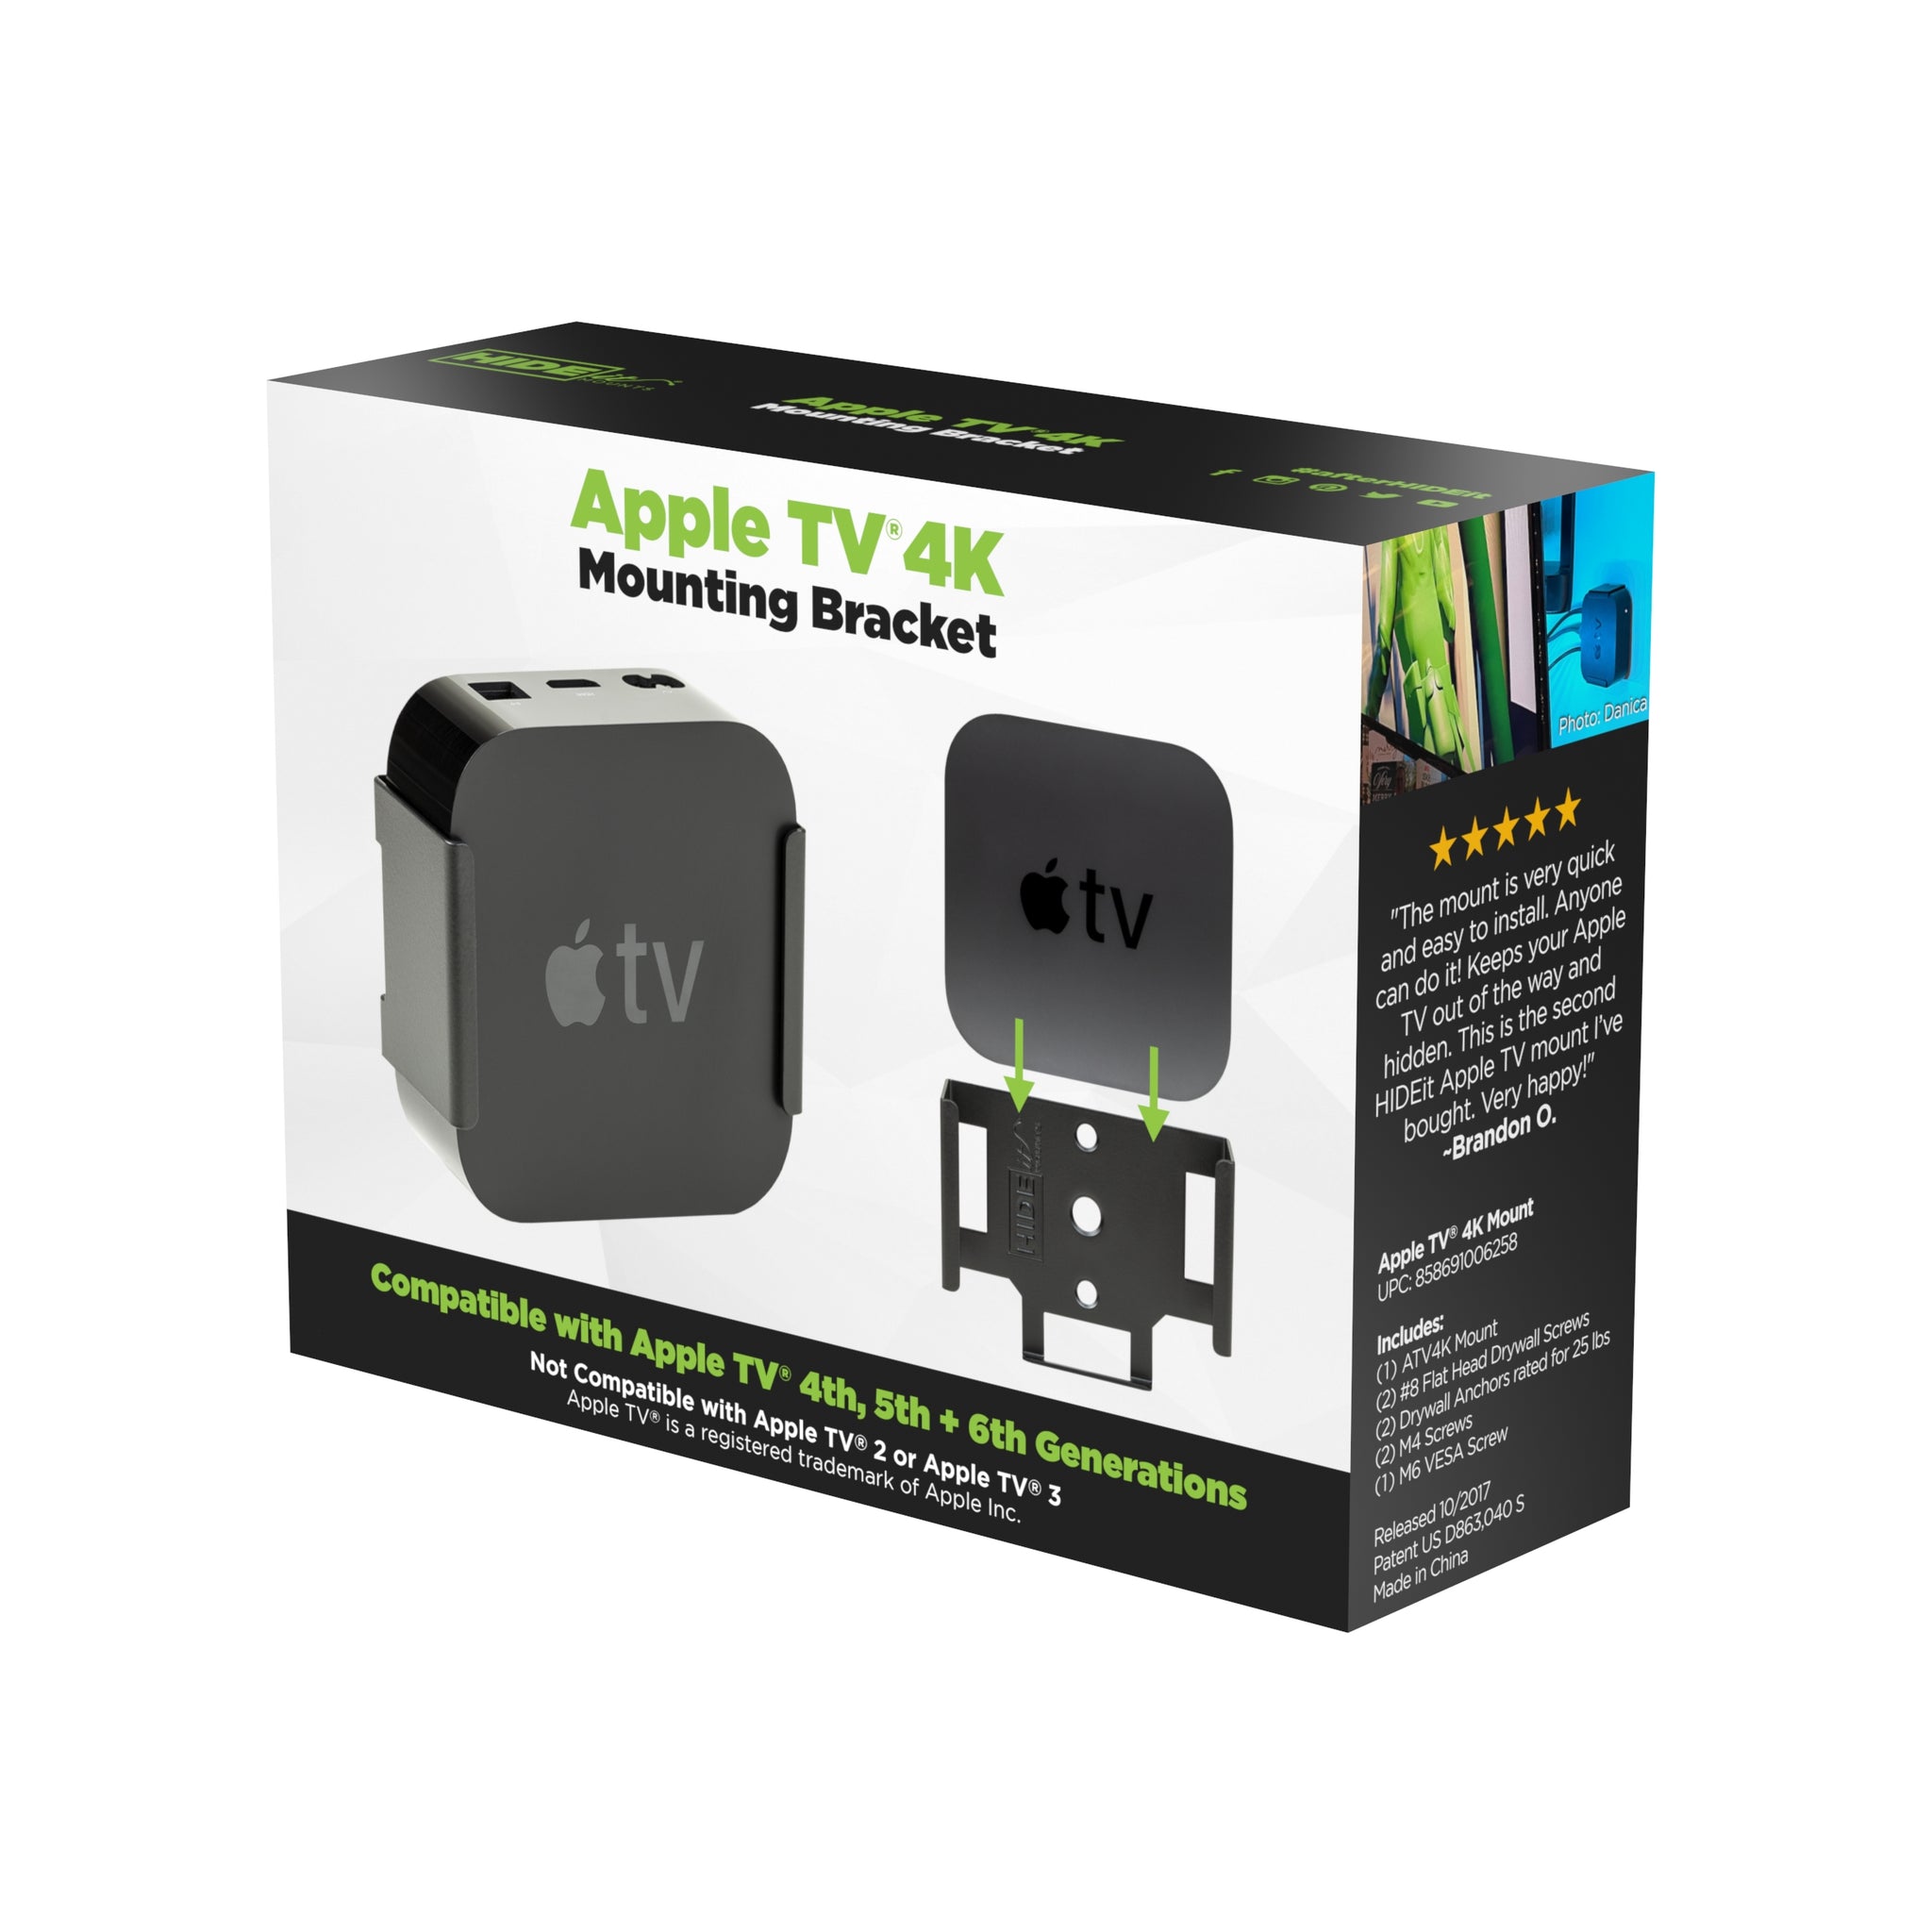 W - HIDEit ATV4K Retail Packaging | Apple TV 4K Mounts in Retail Packaging